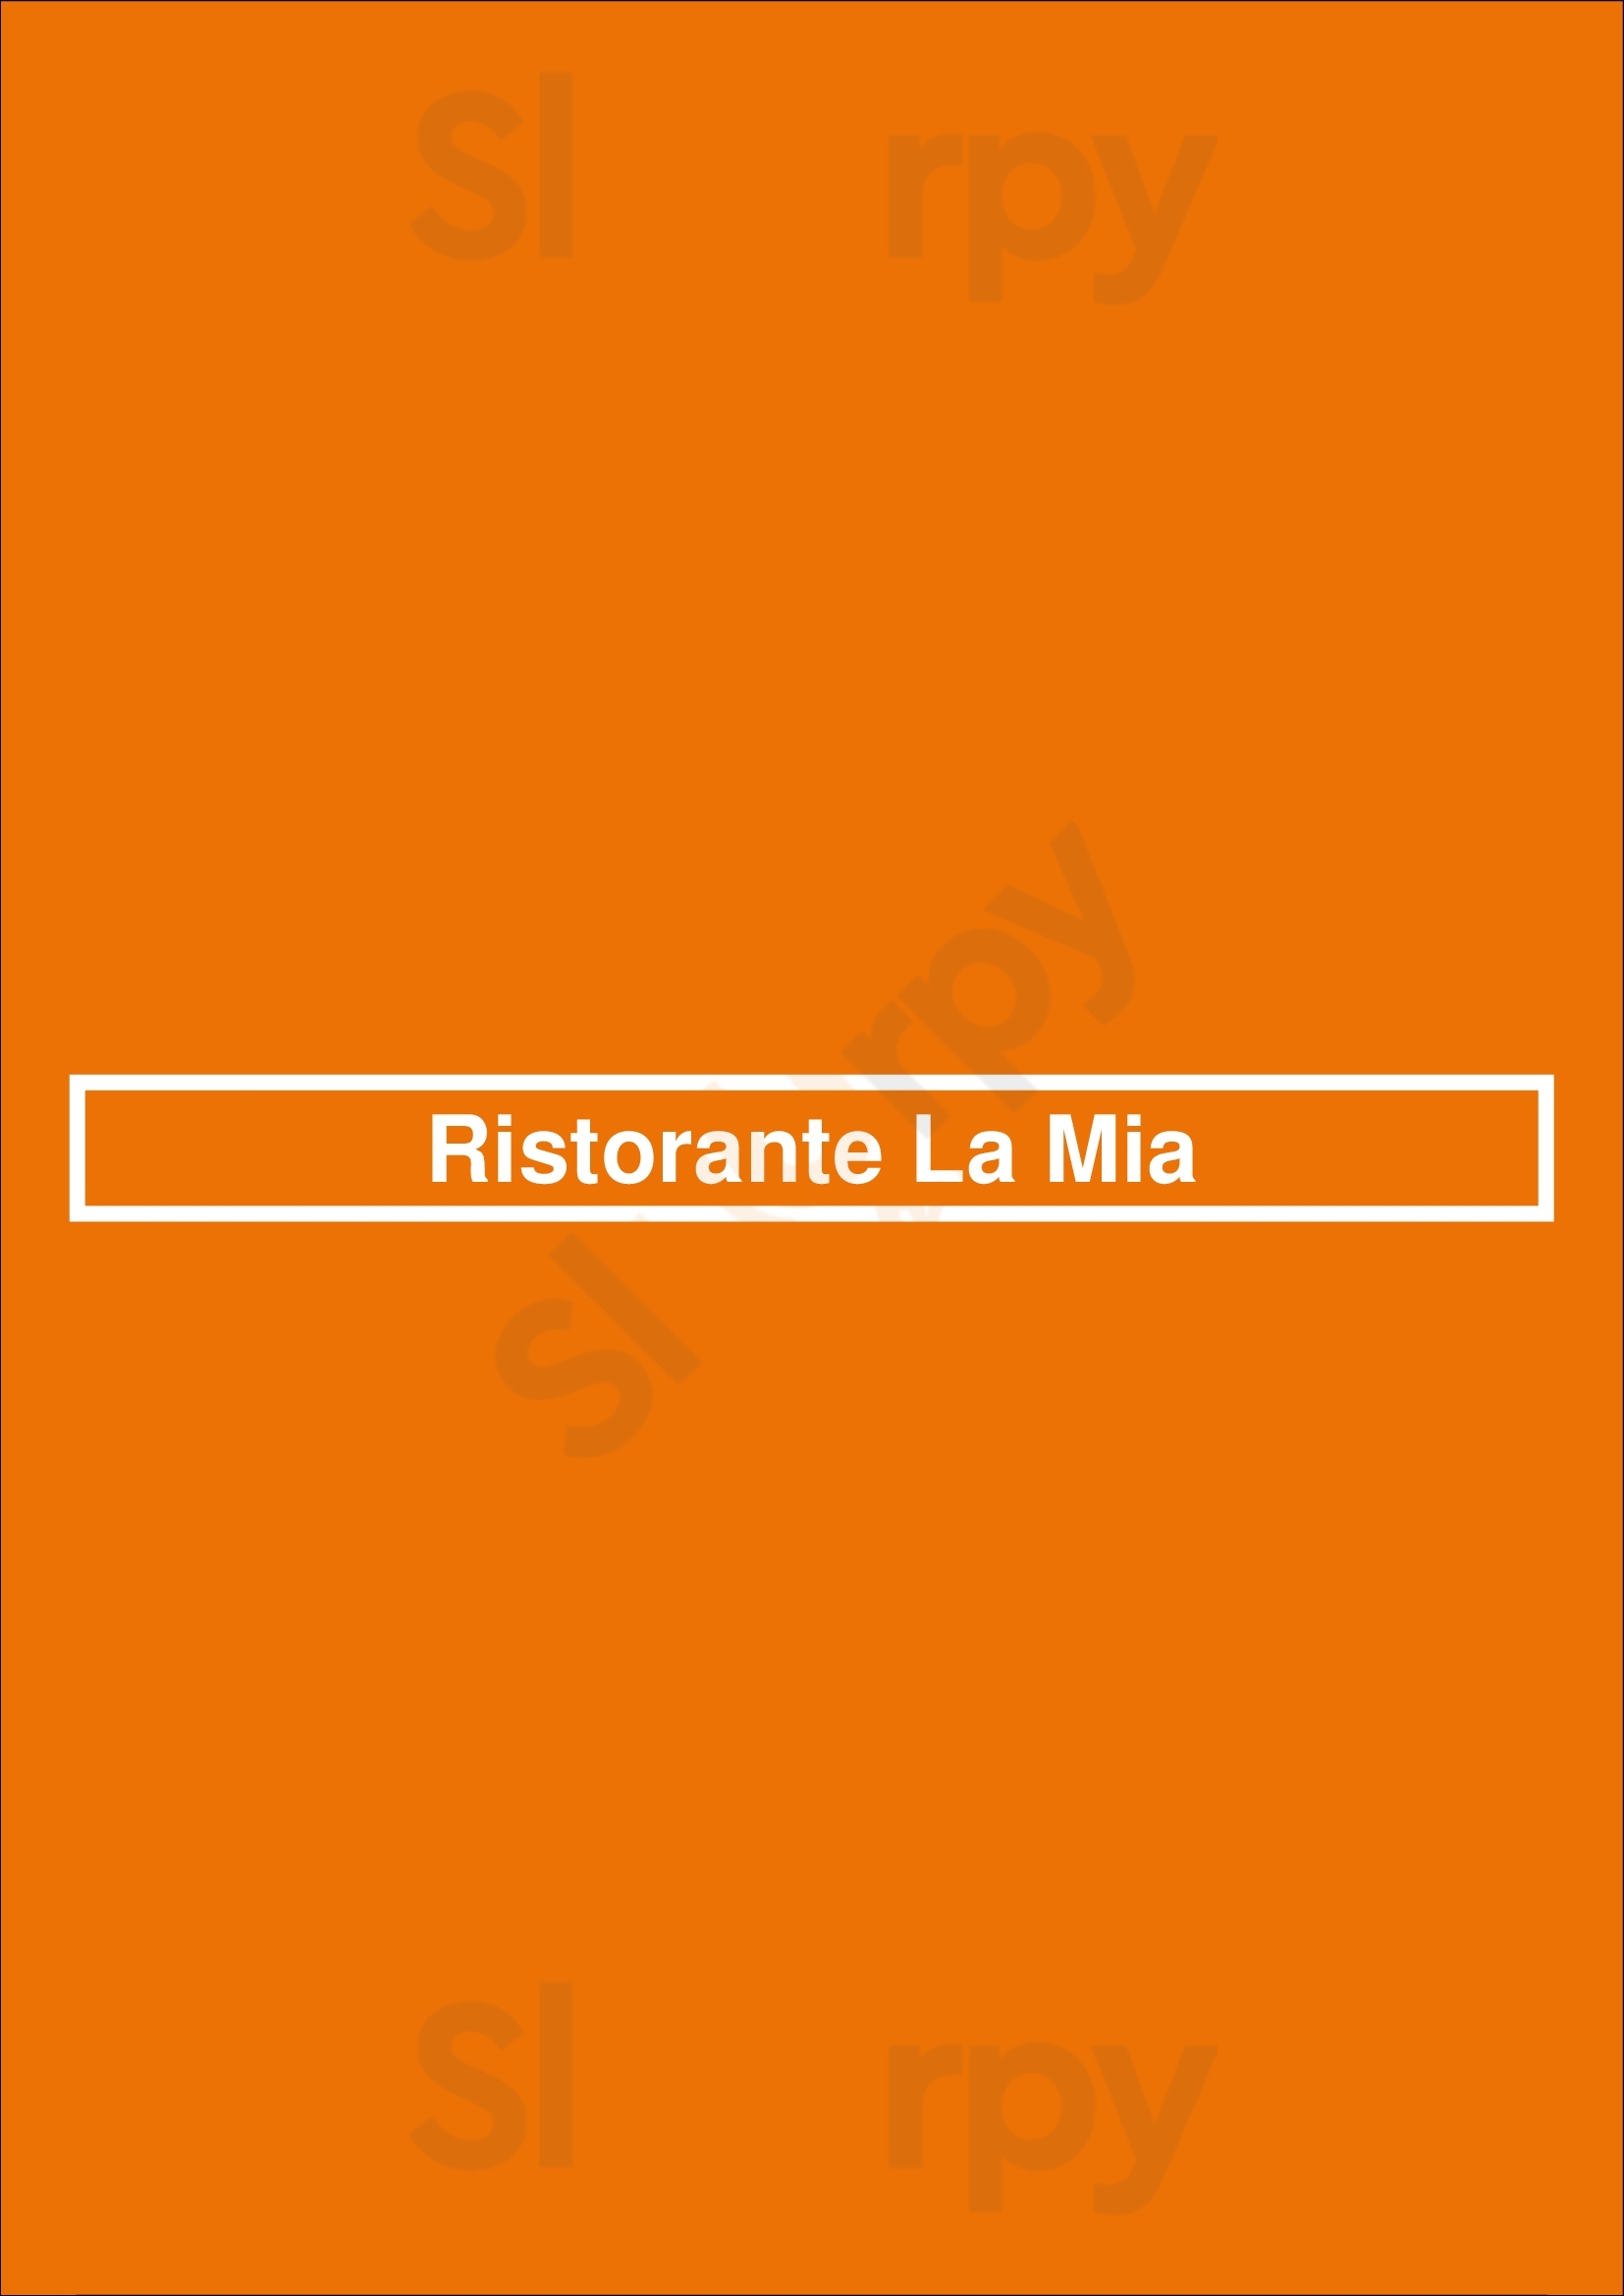 Ristorante La Mia Santpoort-Noord Menu - 1